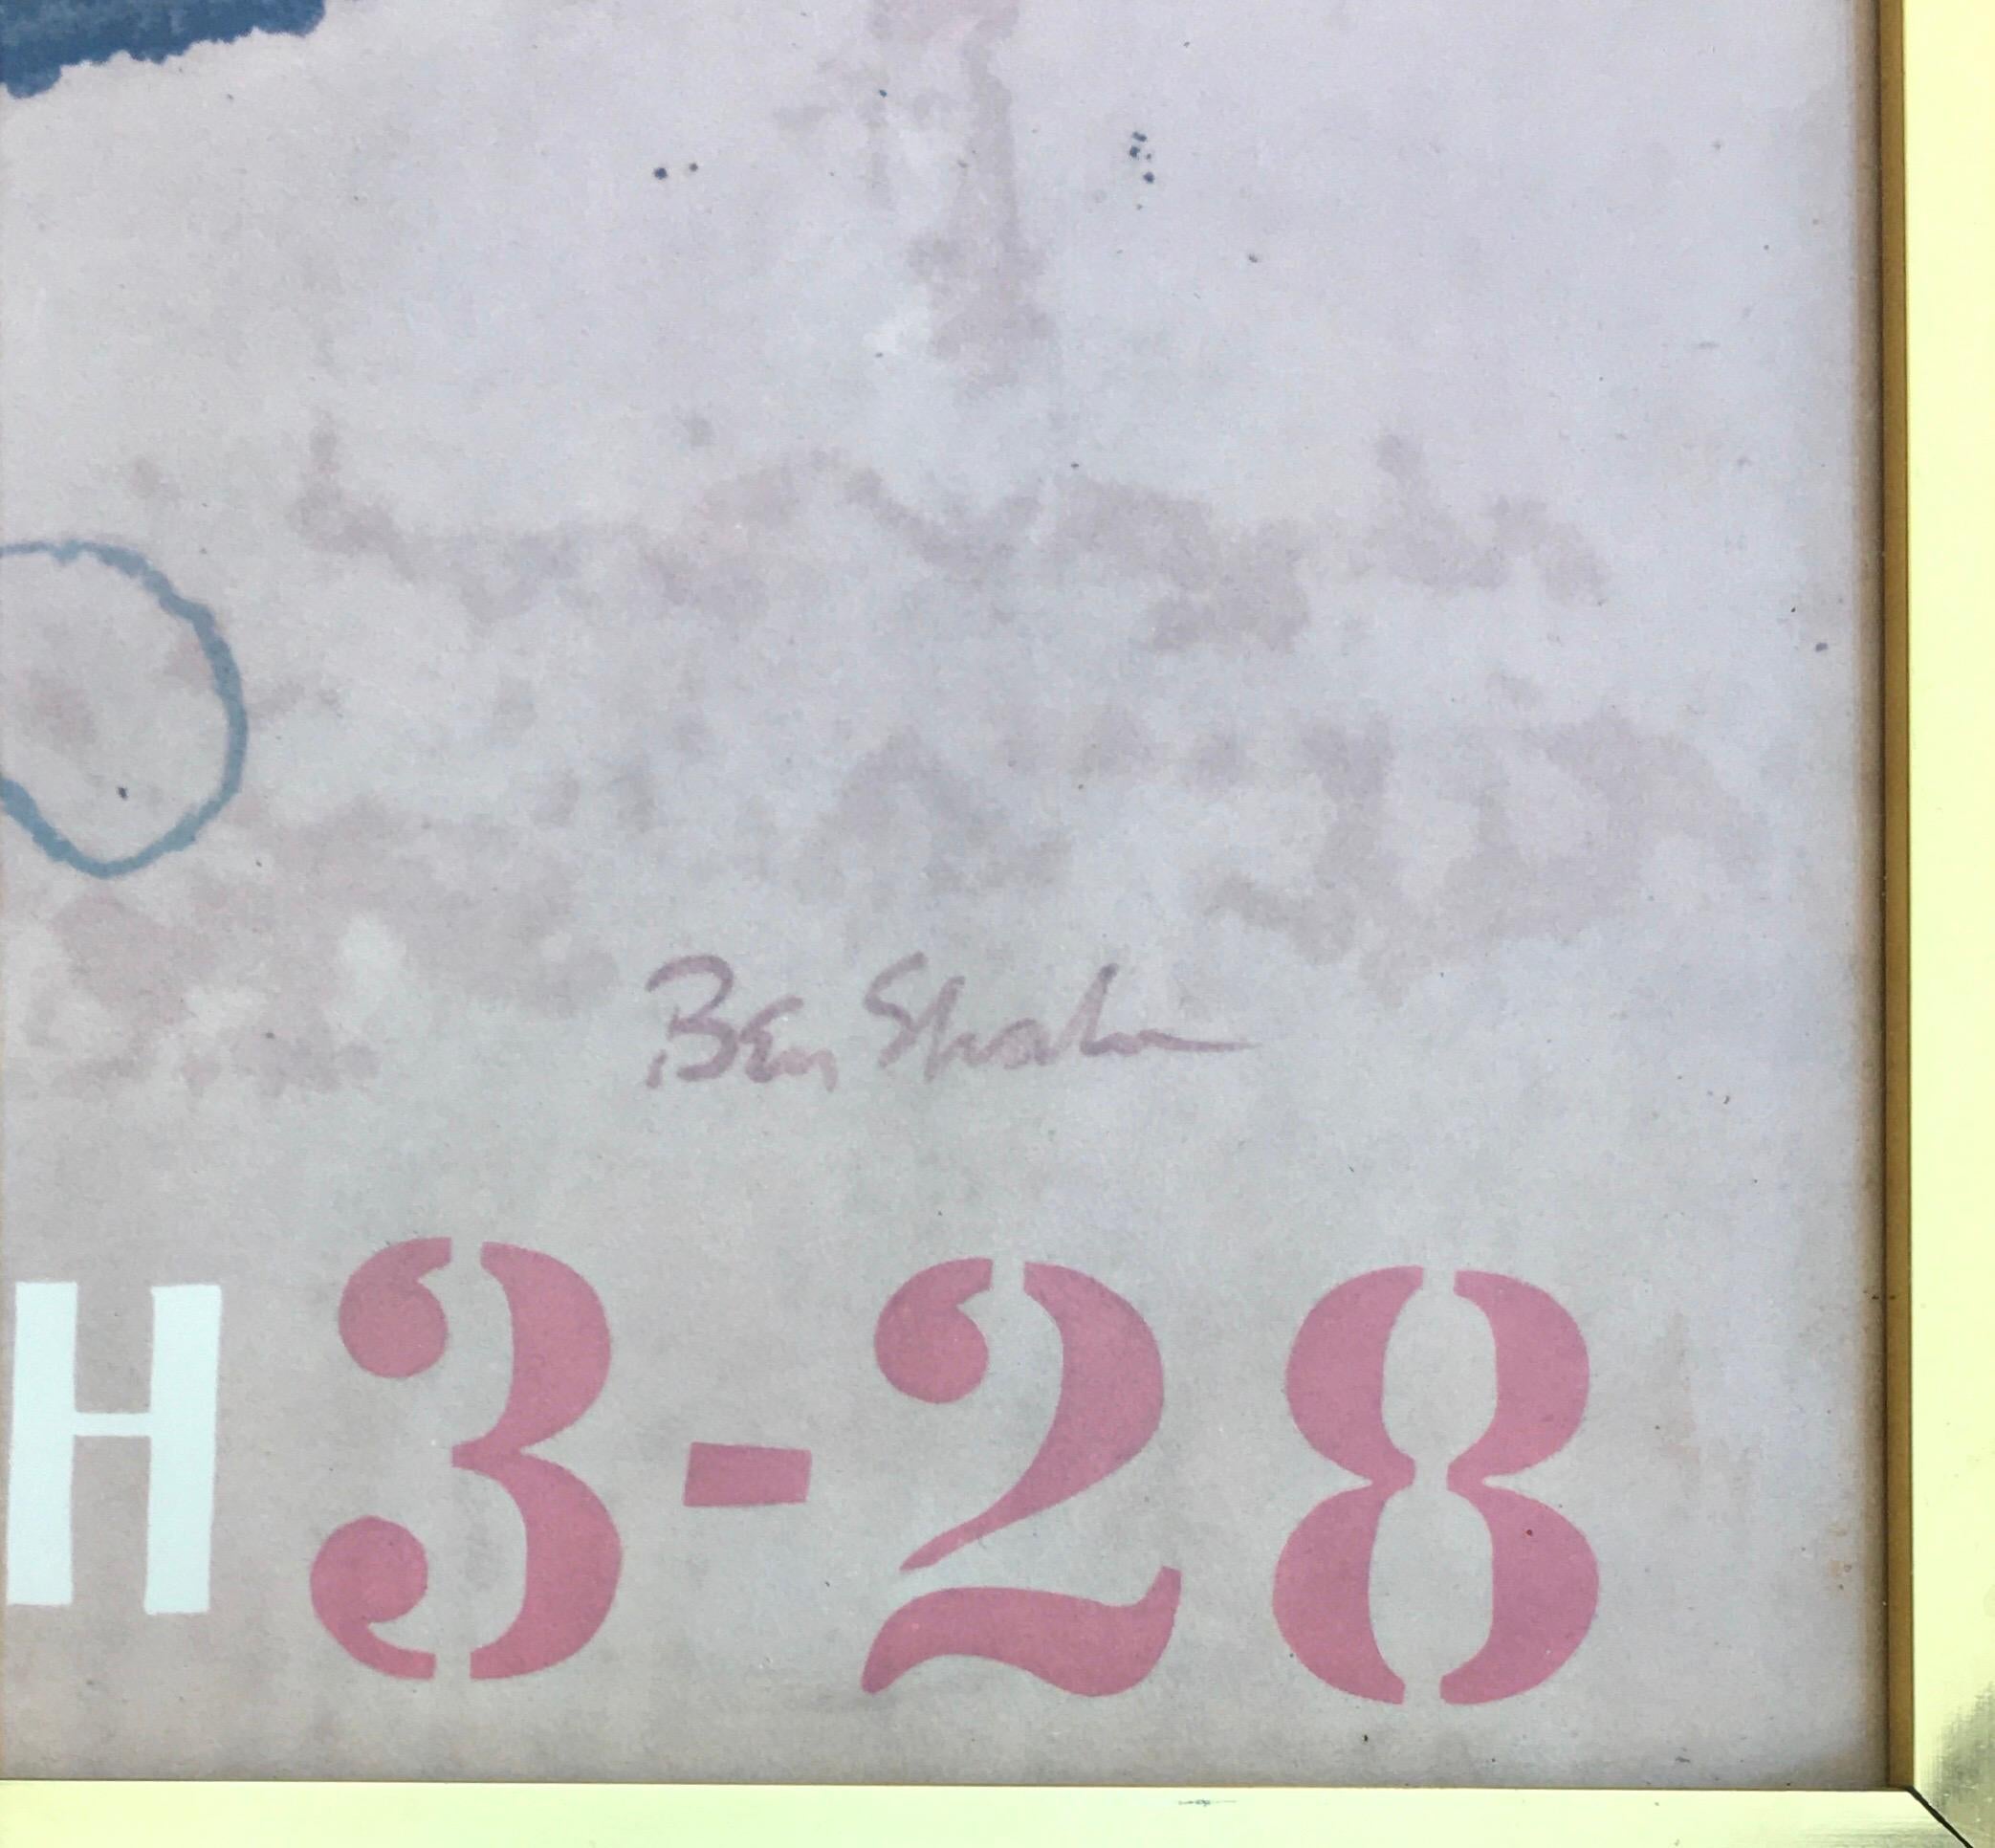 Midcentury Modern 1964 affiche d'exposition originale en lithographie de Ben Shahn datée du 3 au 28 mars.  Cet art abstrait figuratif est encadré dans un cadre original en laiton derrière un verre transparent.

Médium : Photolithographie offset